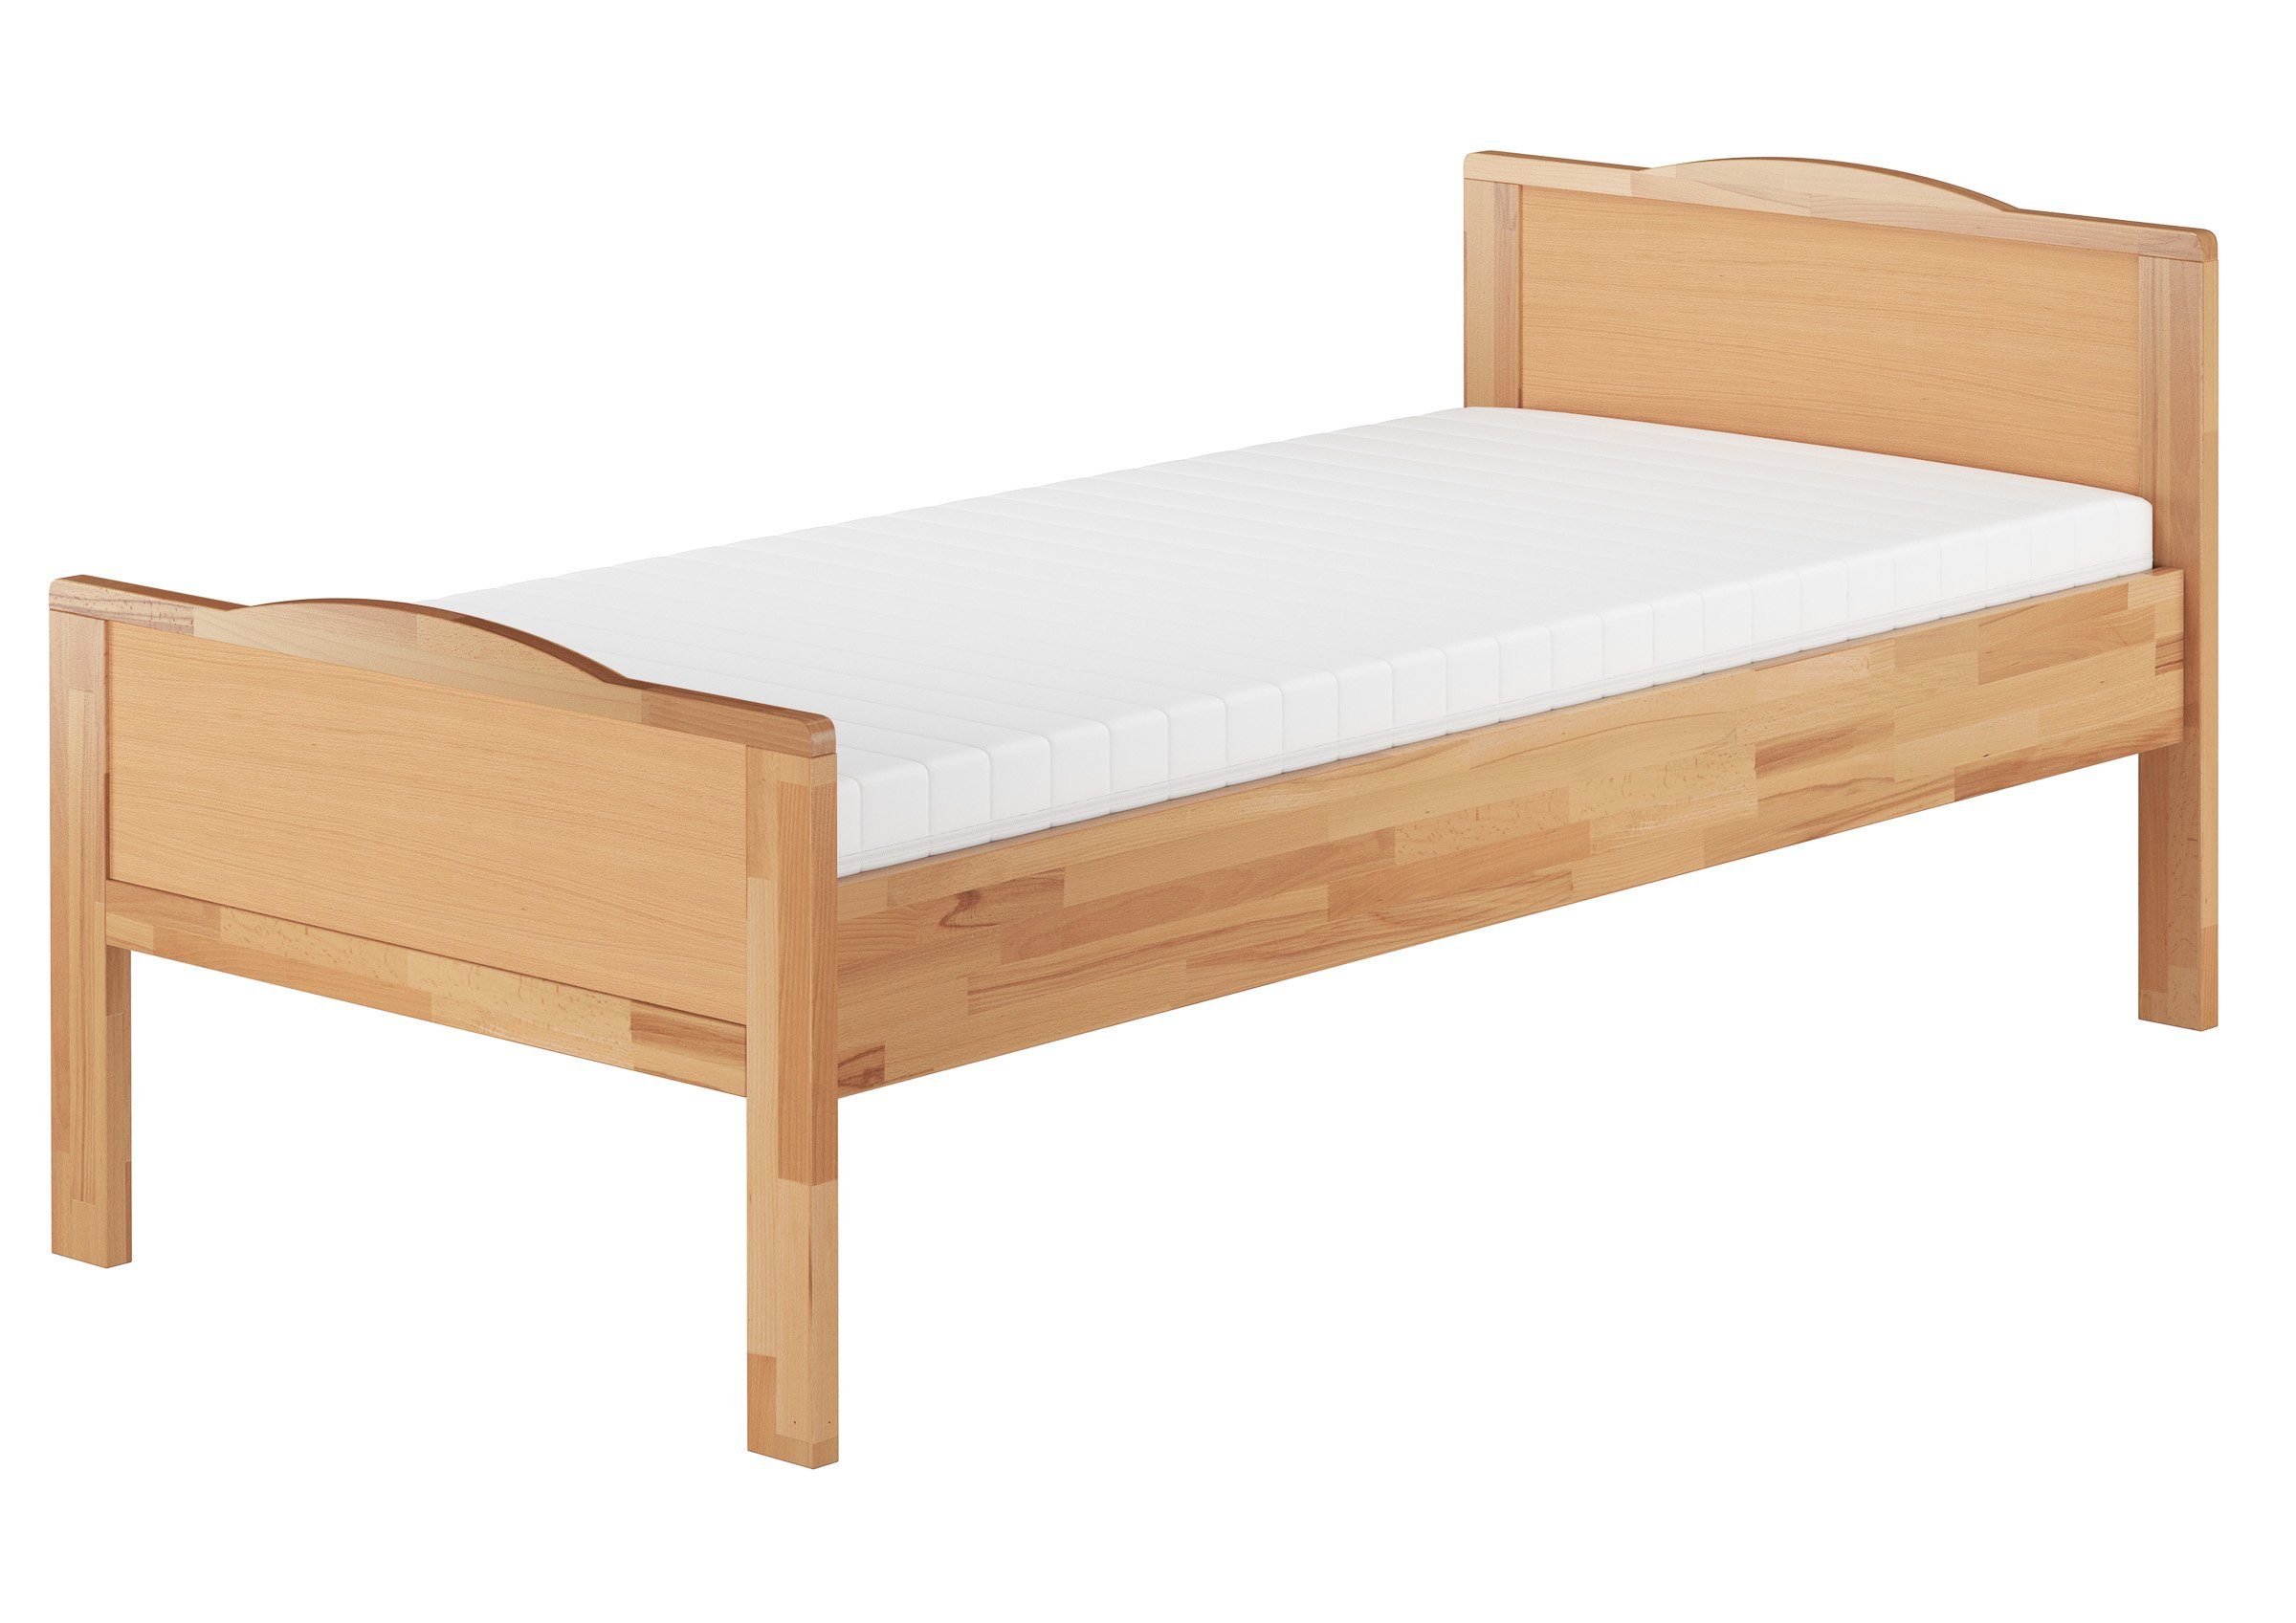 und Komplettset Einzelbett Bett Buchefarblos 100x200 ERST-HOLZ Buche Matratze, lackiert mit Federleisten